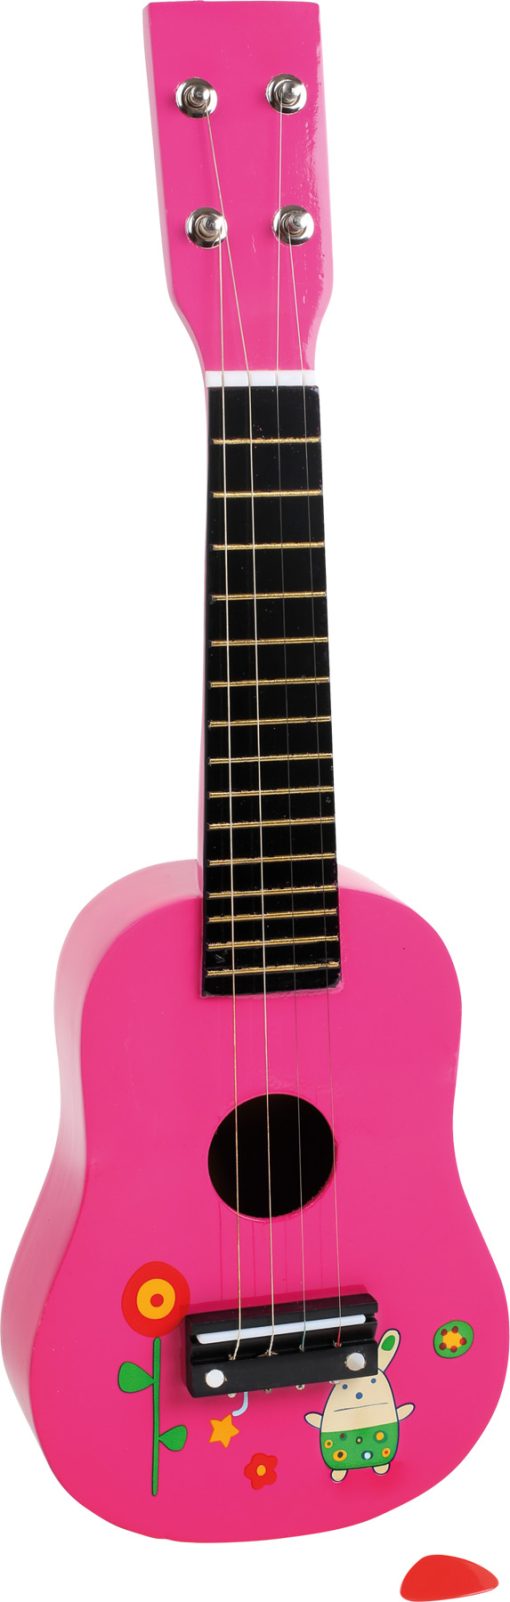 LG 2415 ukulele pink 1